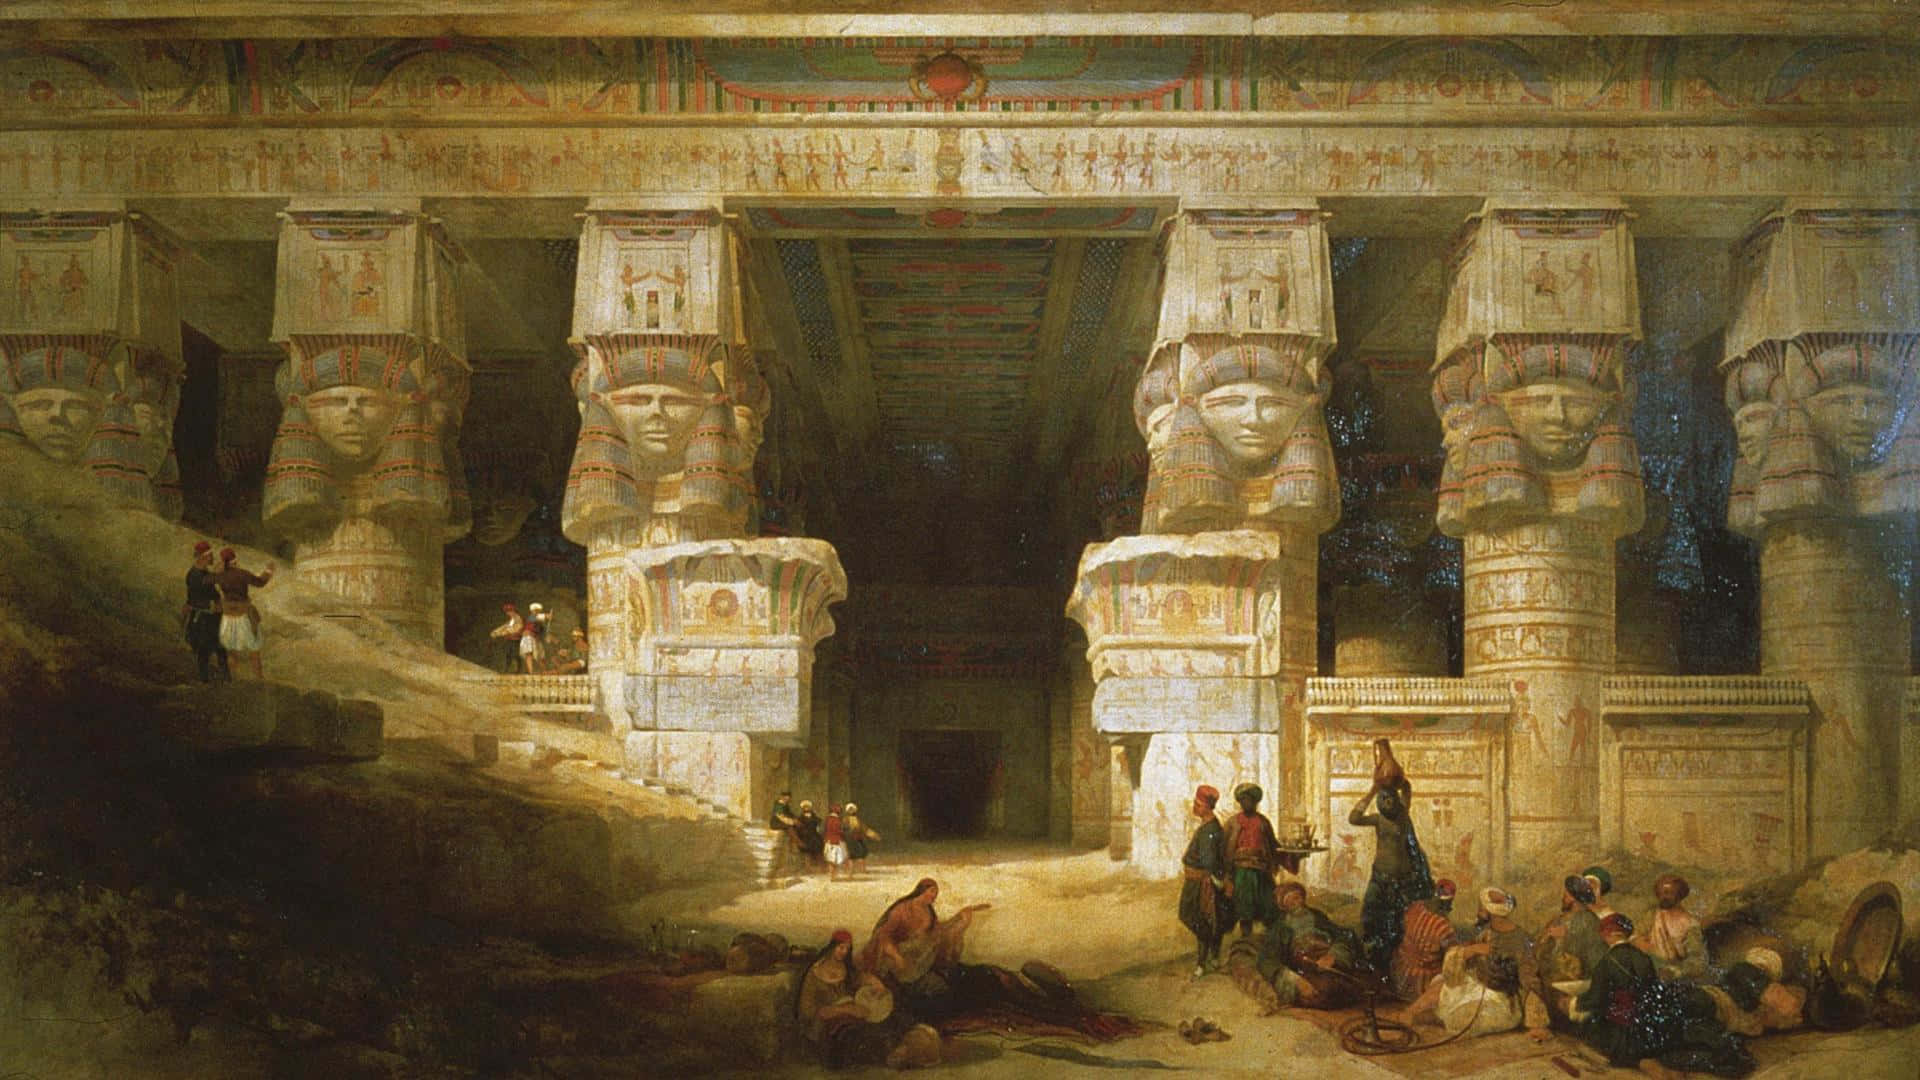 Et maleri af en egyptisk tempel med mennesker i det. Wallpaper